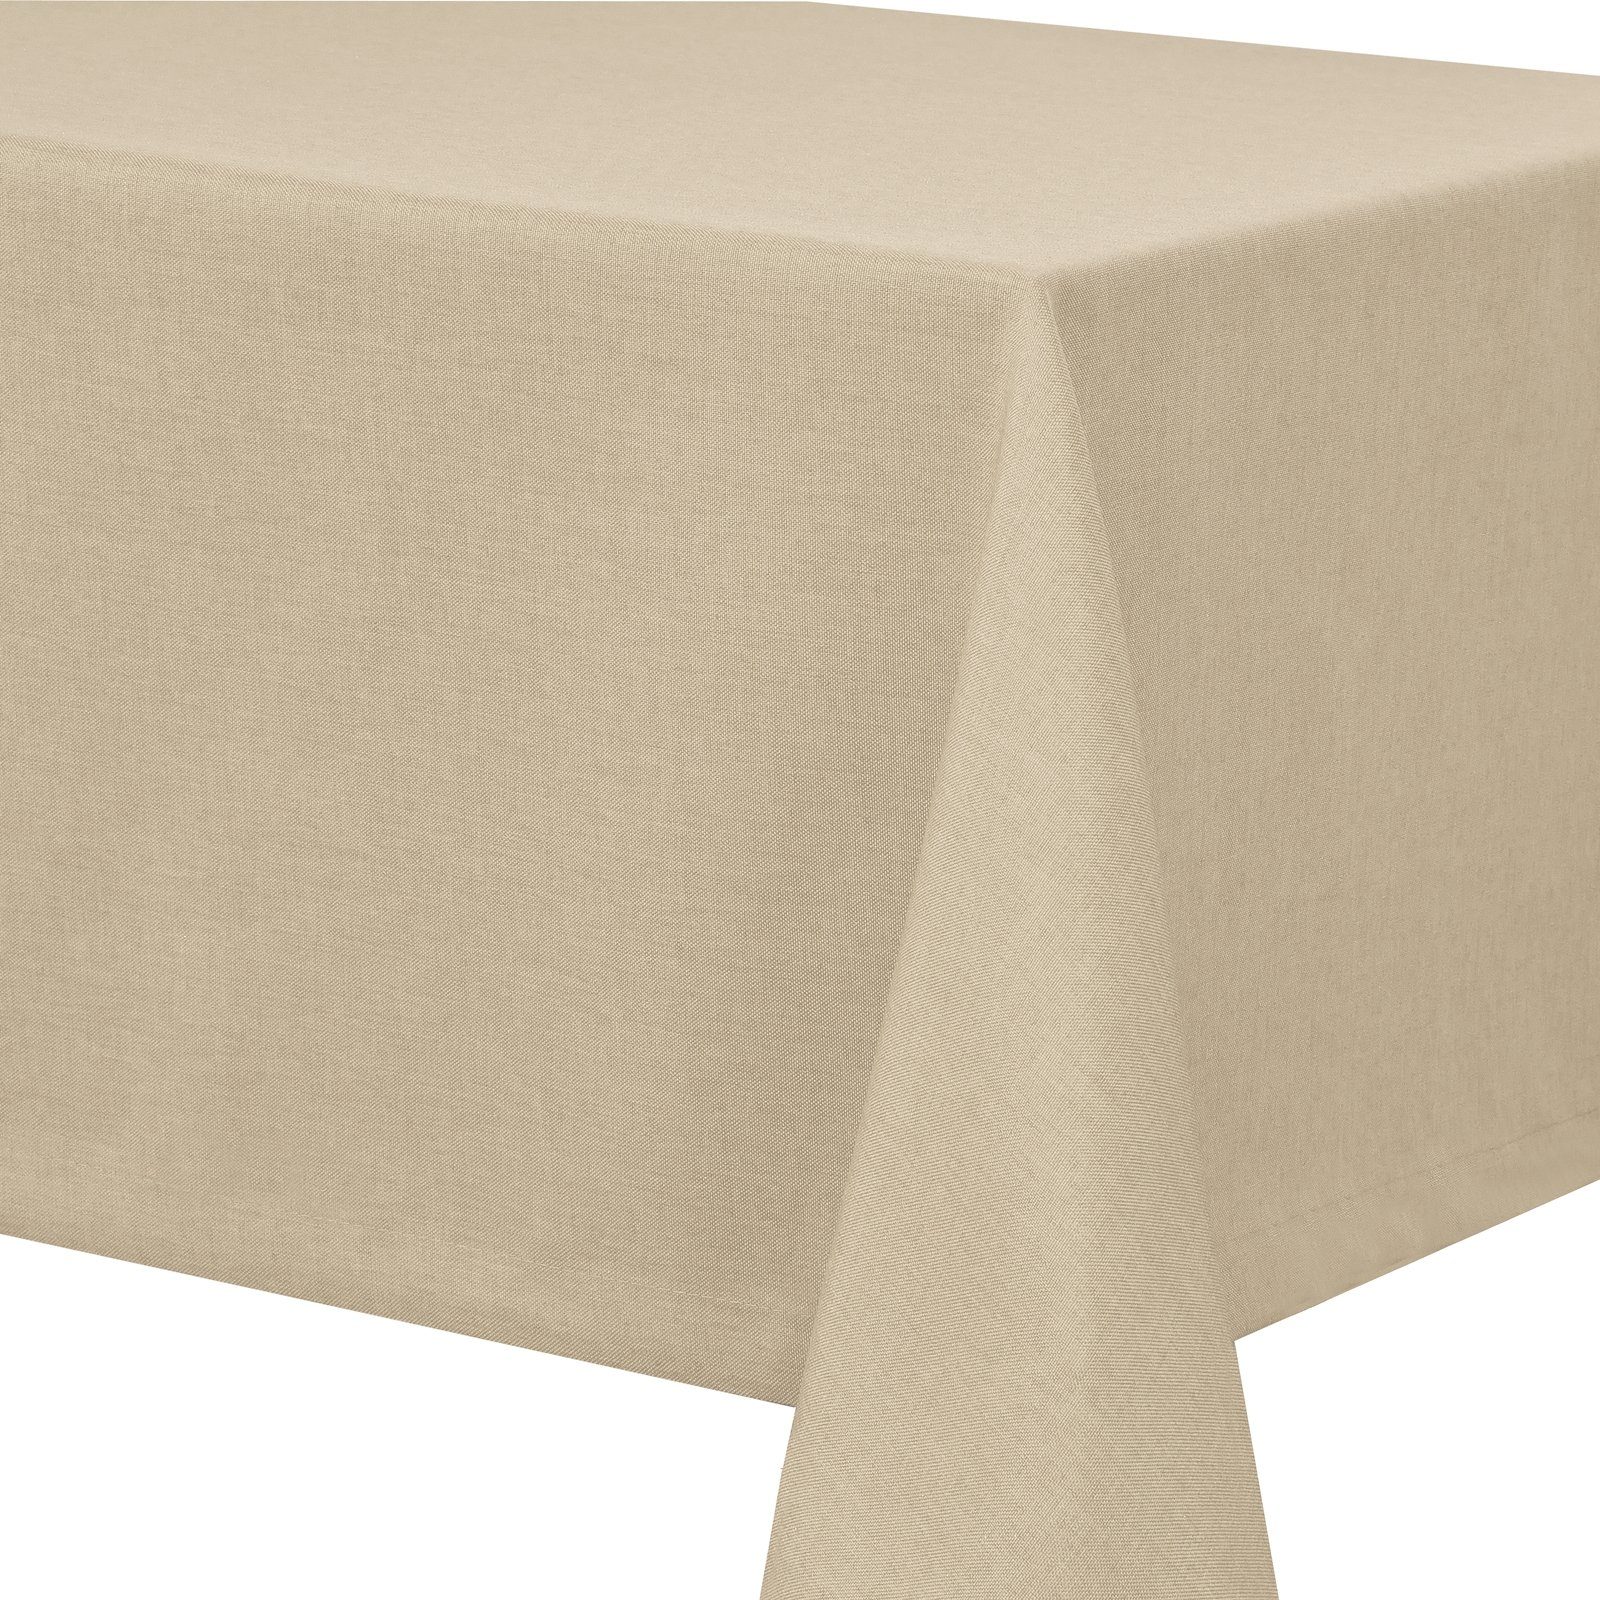 Optik Tischdecke tafeltuch pflegeleicht abwaschbar schmutzabweisend Tischdecke Tischtuch Leinenstruktur Lotuseffekt Creme Leinen Fiora